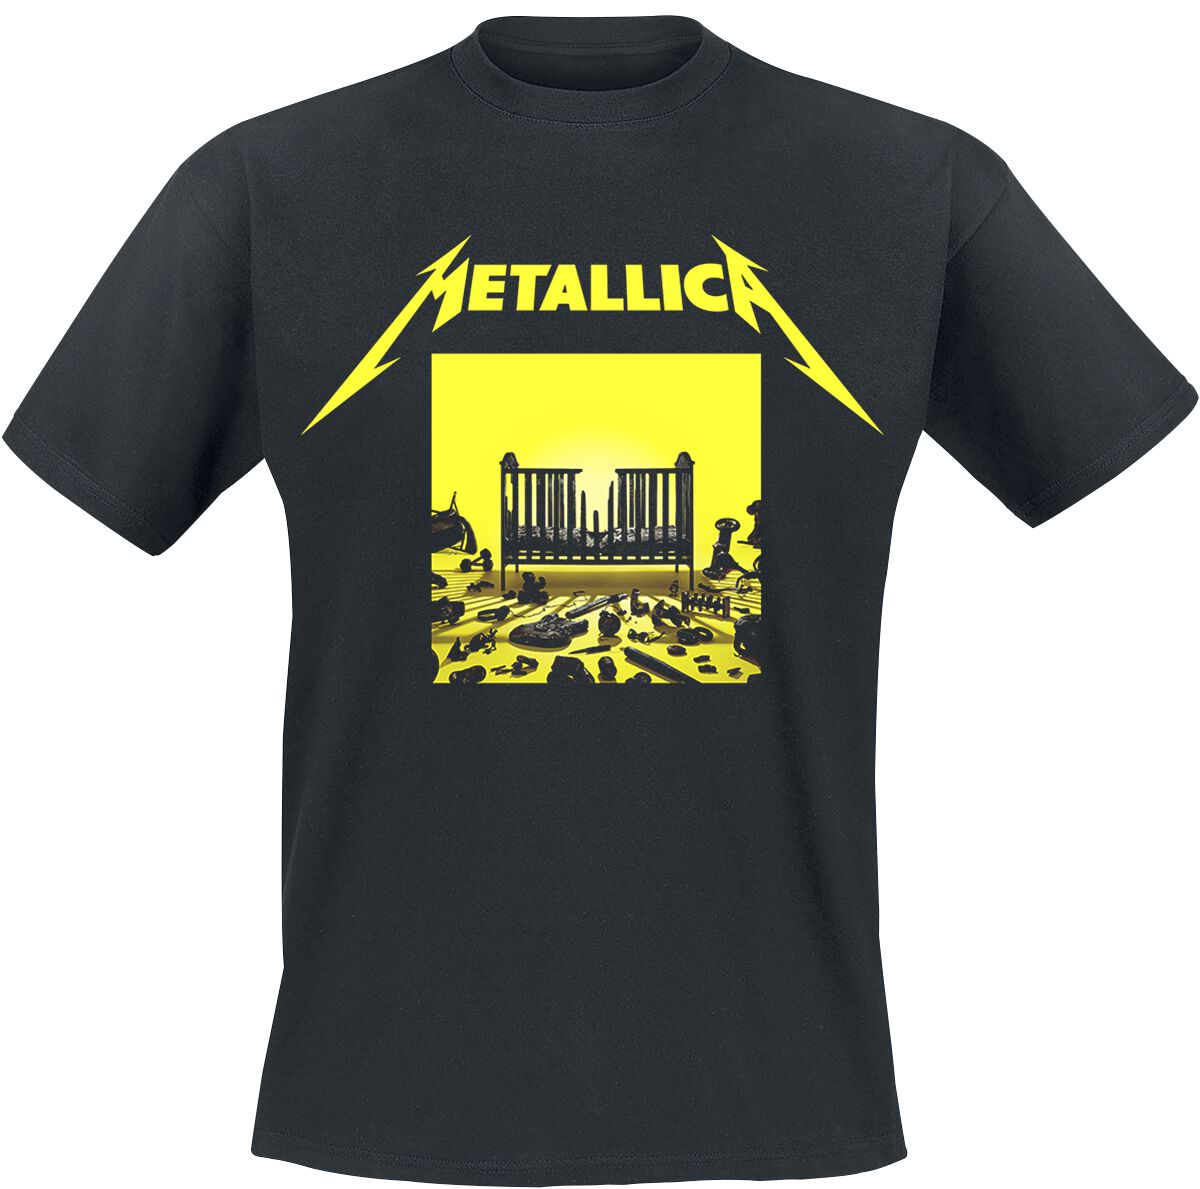 Metallica T-Shirt - M72 Squared Cover - S bis 5XL - für Männer - Größe M - schwarz  - Lizenziertes Merchandise!